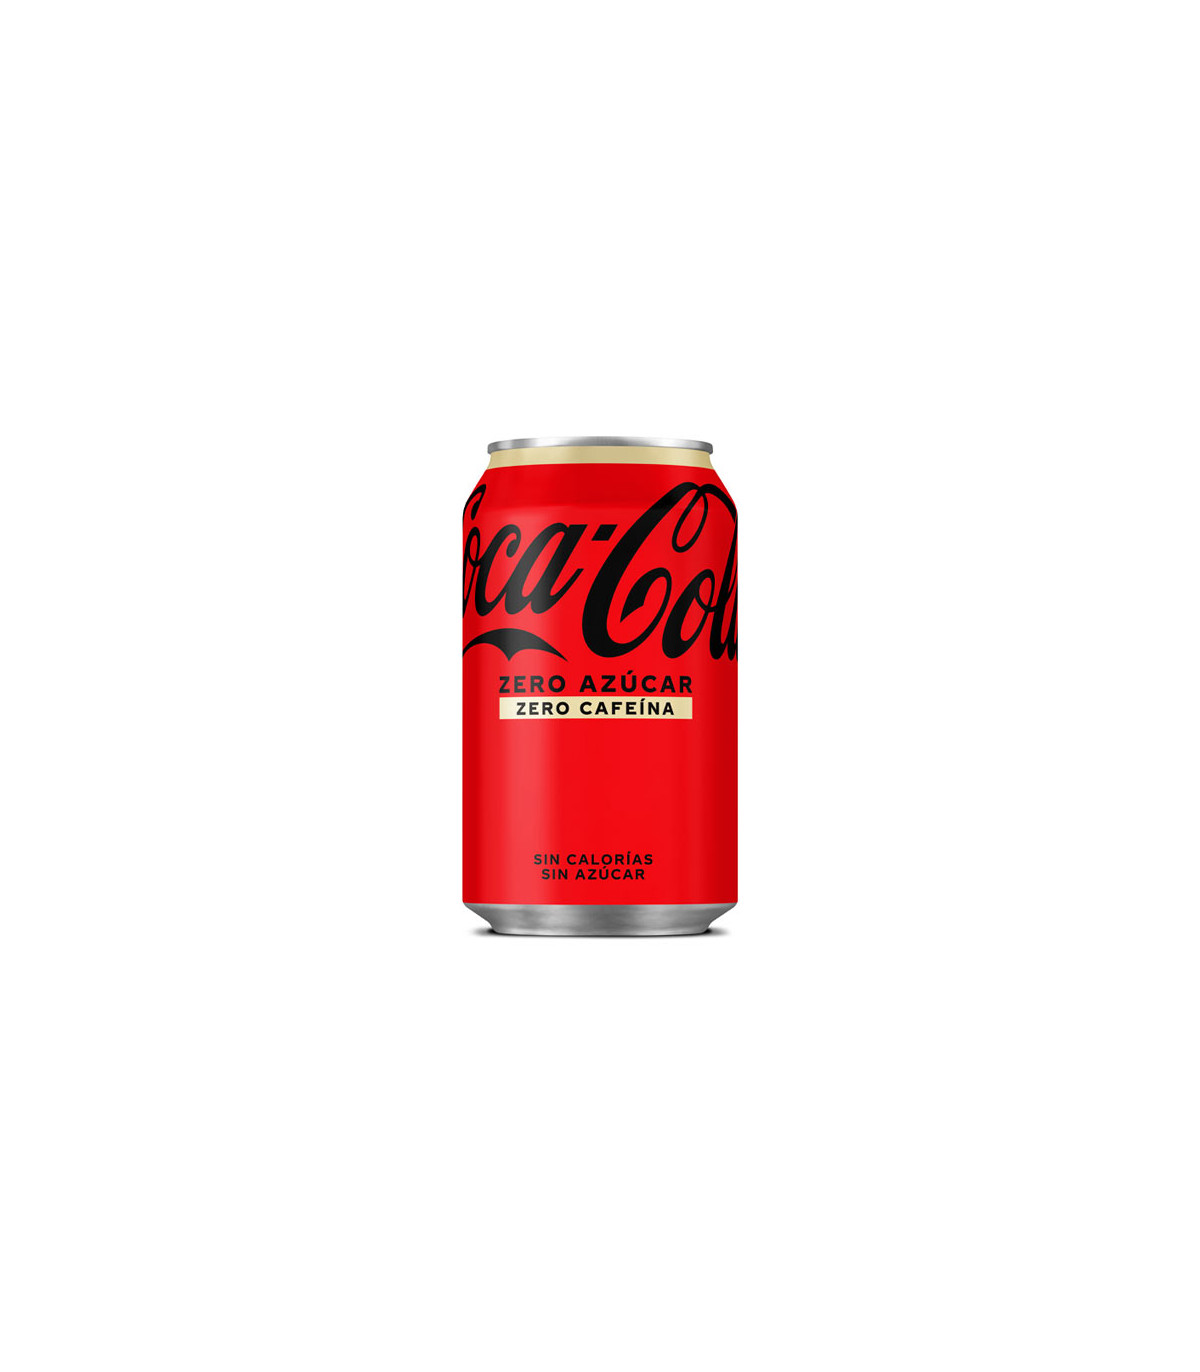 Coca-Cola Zero azúcar Zero cafeína - 330 ml